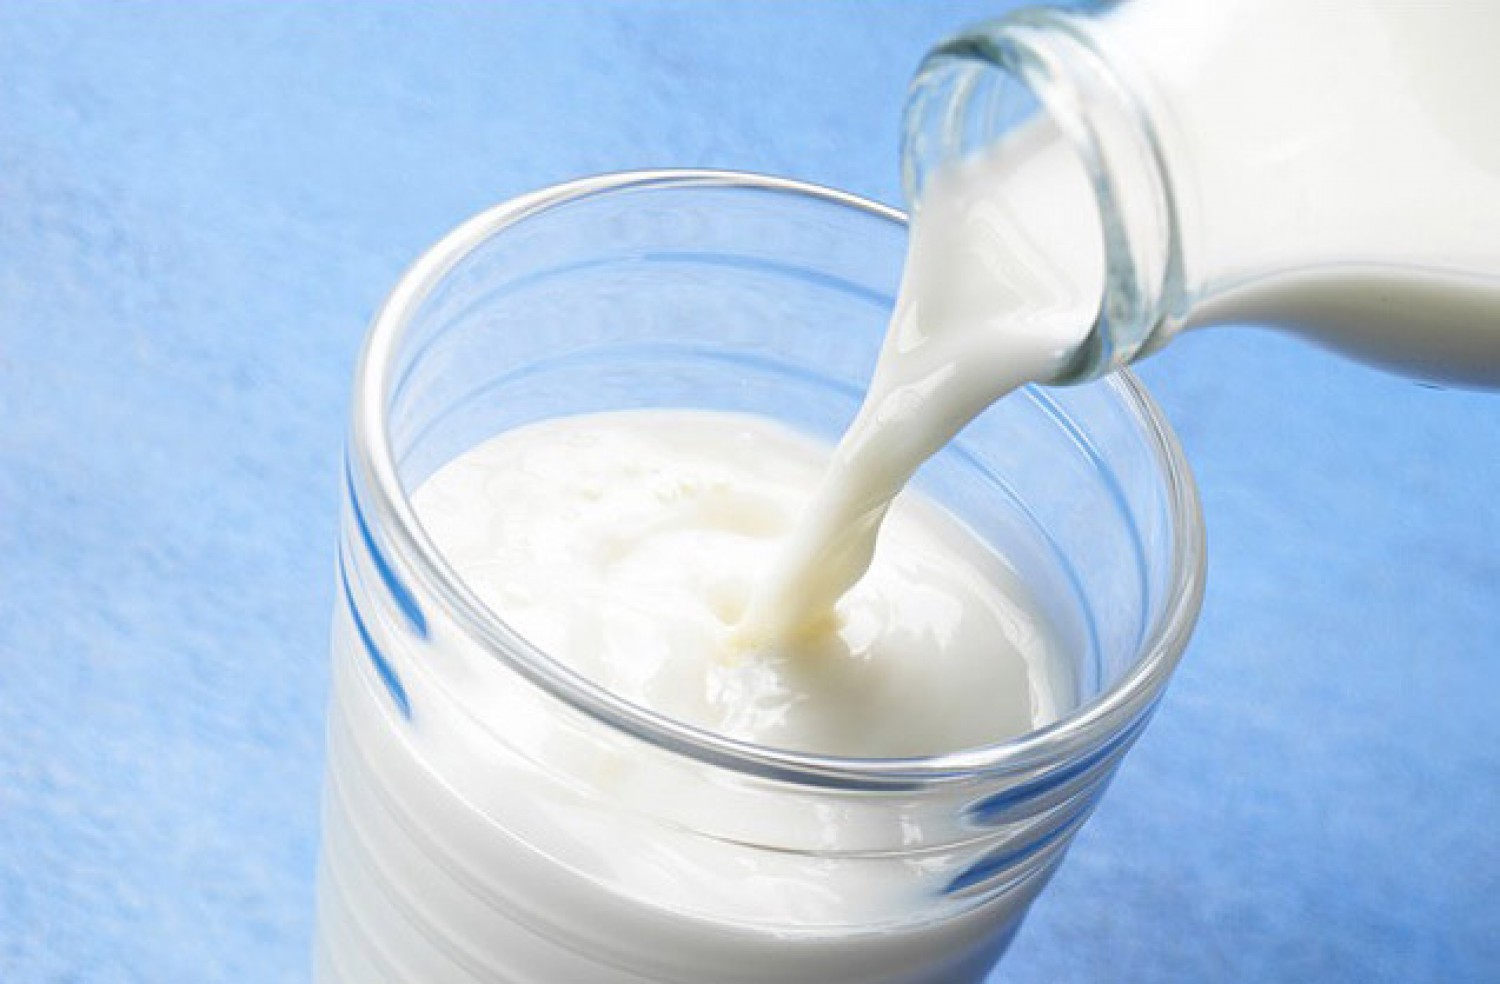 عين نقل ظهر السفينة  أبحاث علمية : هذا ما يحدث لجسمك إذا تناولت كوب من الحليب يوميا؟ | العرب برس